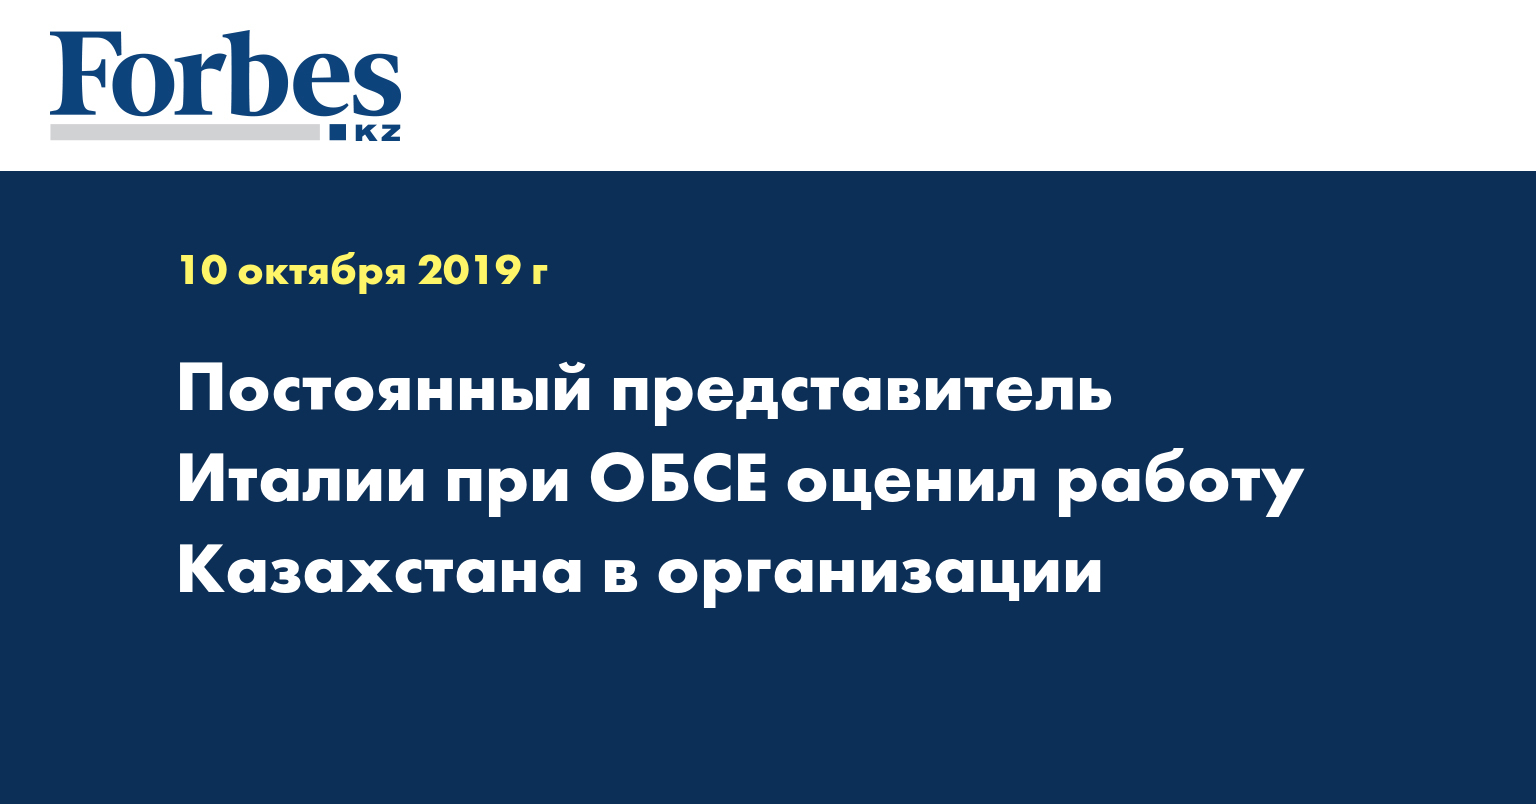 Постоянный представитель Италии при ОБСЕ оценил работу Казахстана в организации